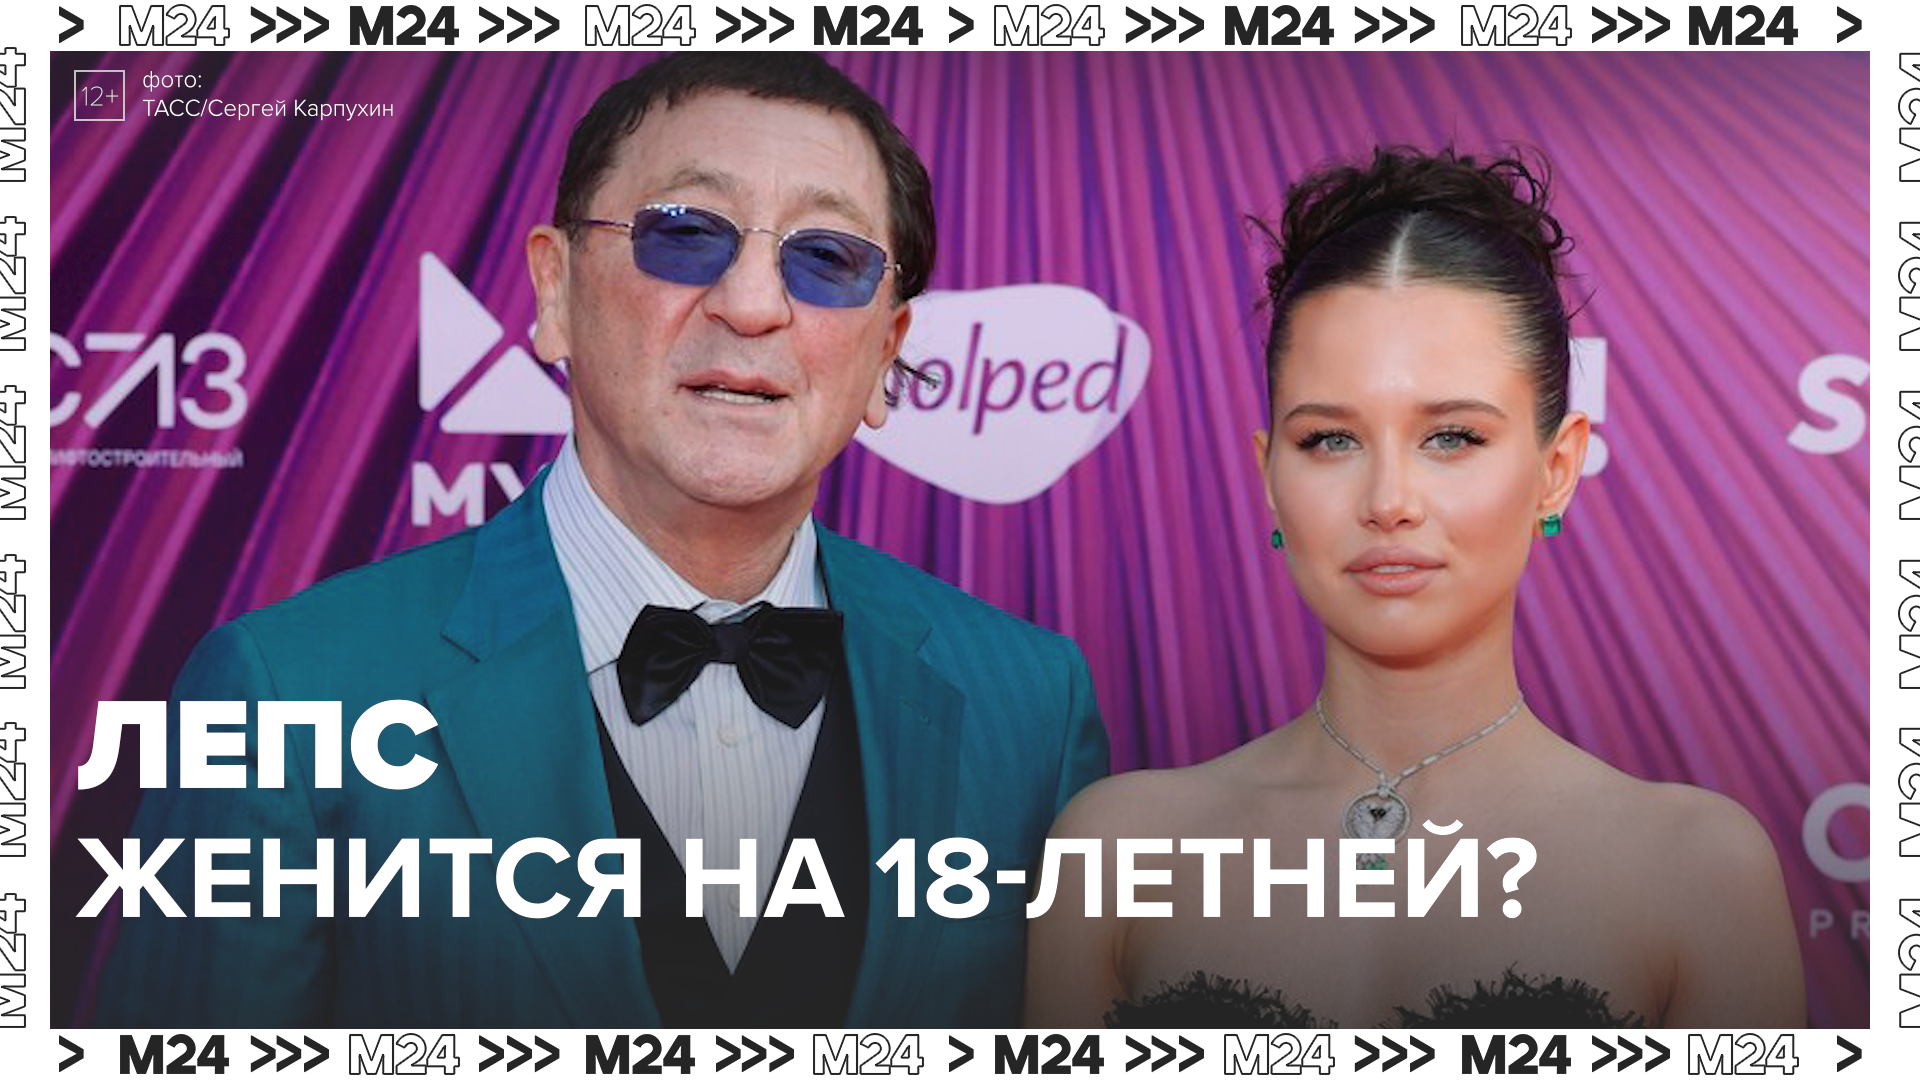 Григорий Лепс женится на 18-летней? — Москва24|Контент